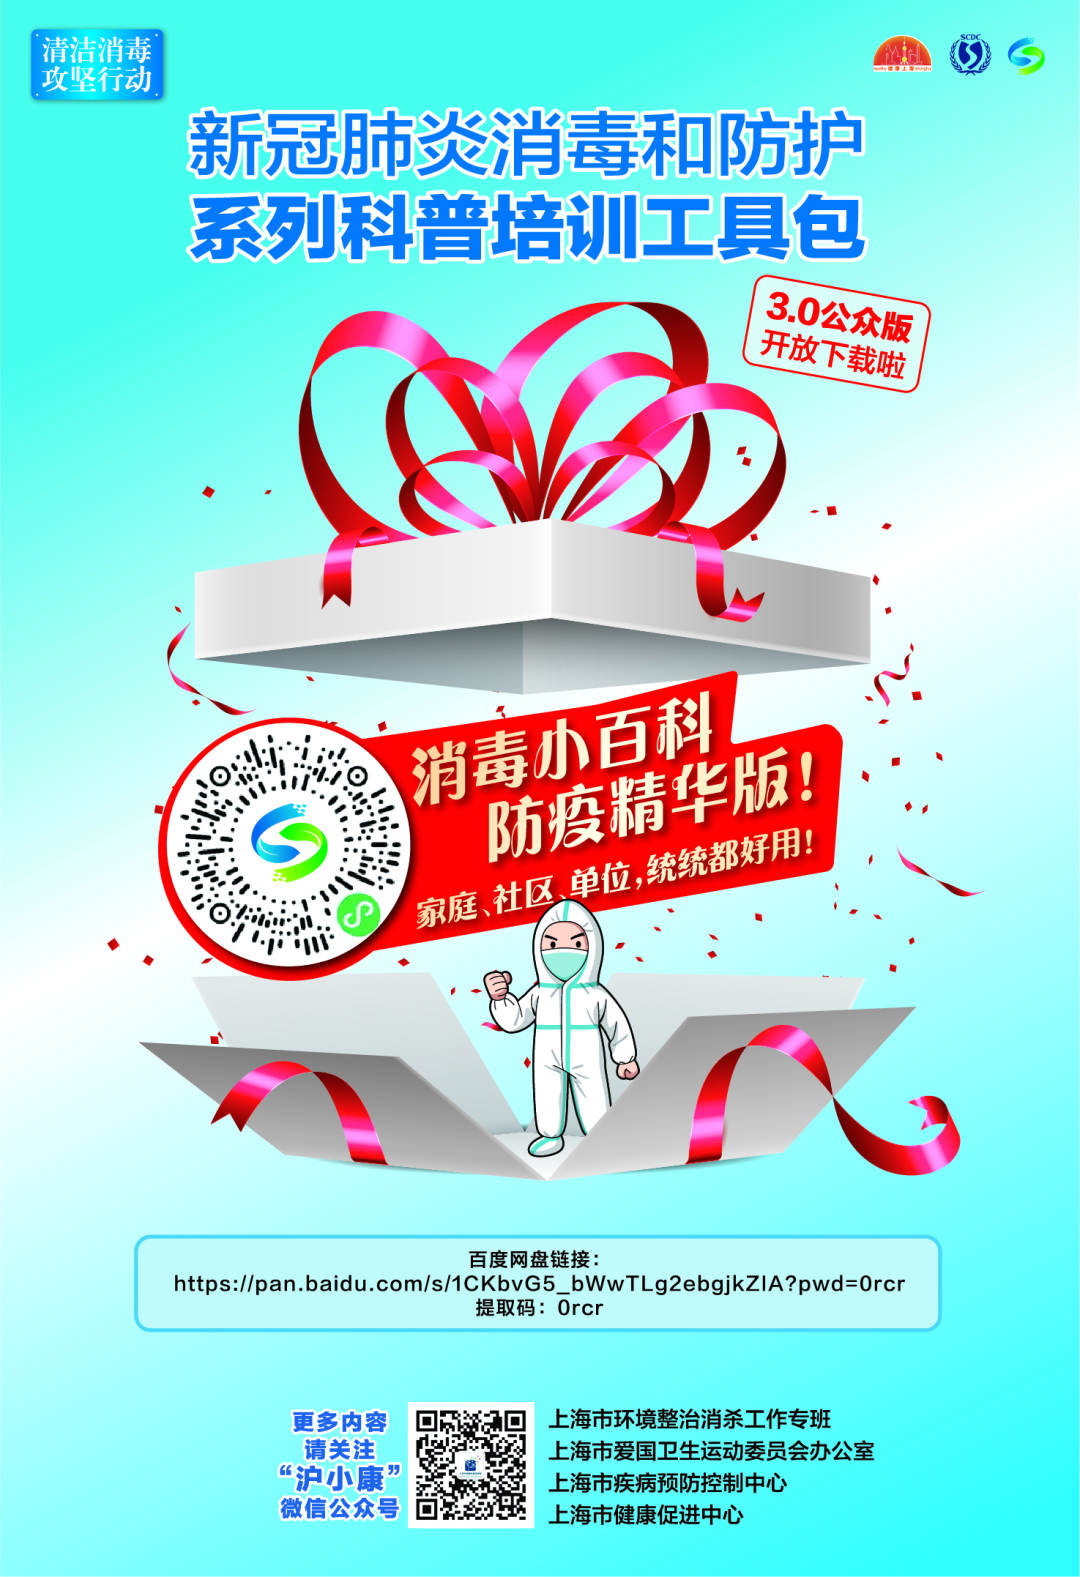 上海推出新冠肺炎消毒和防护科普培训工具包3.0版